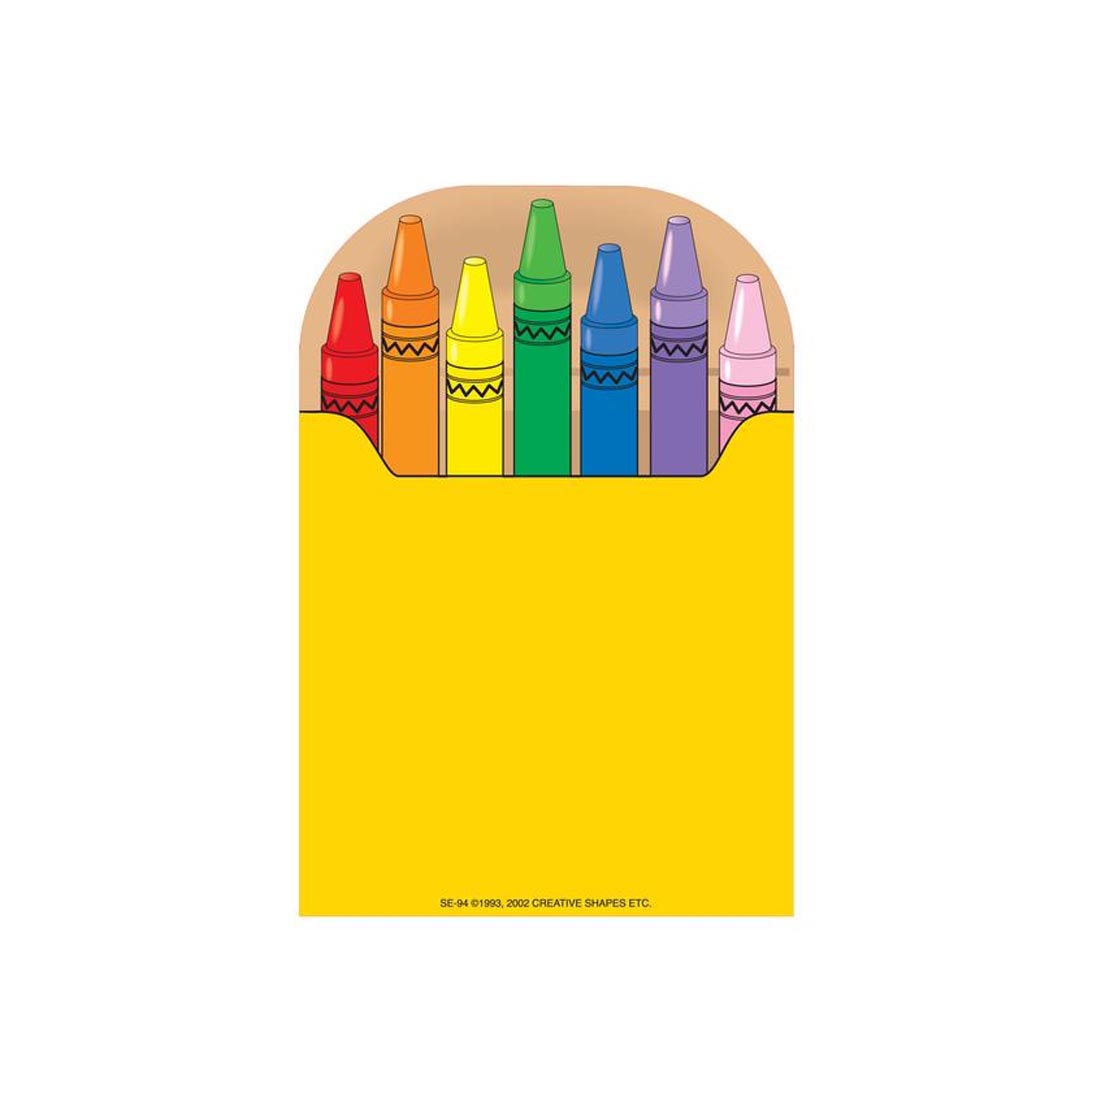 Crayon Box Notepad by Creative Shapes